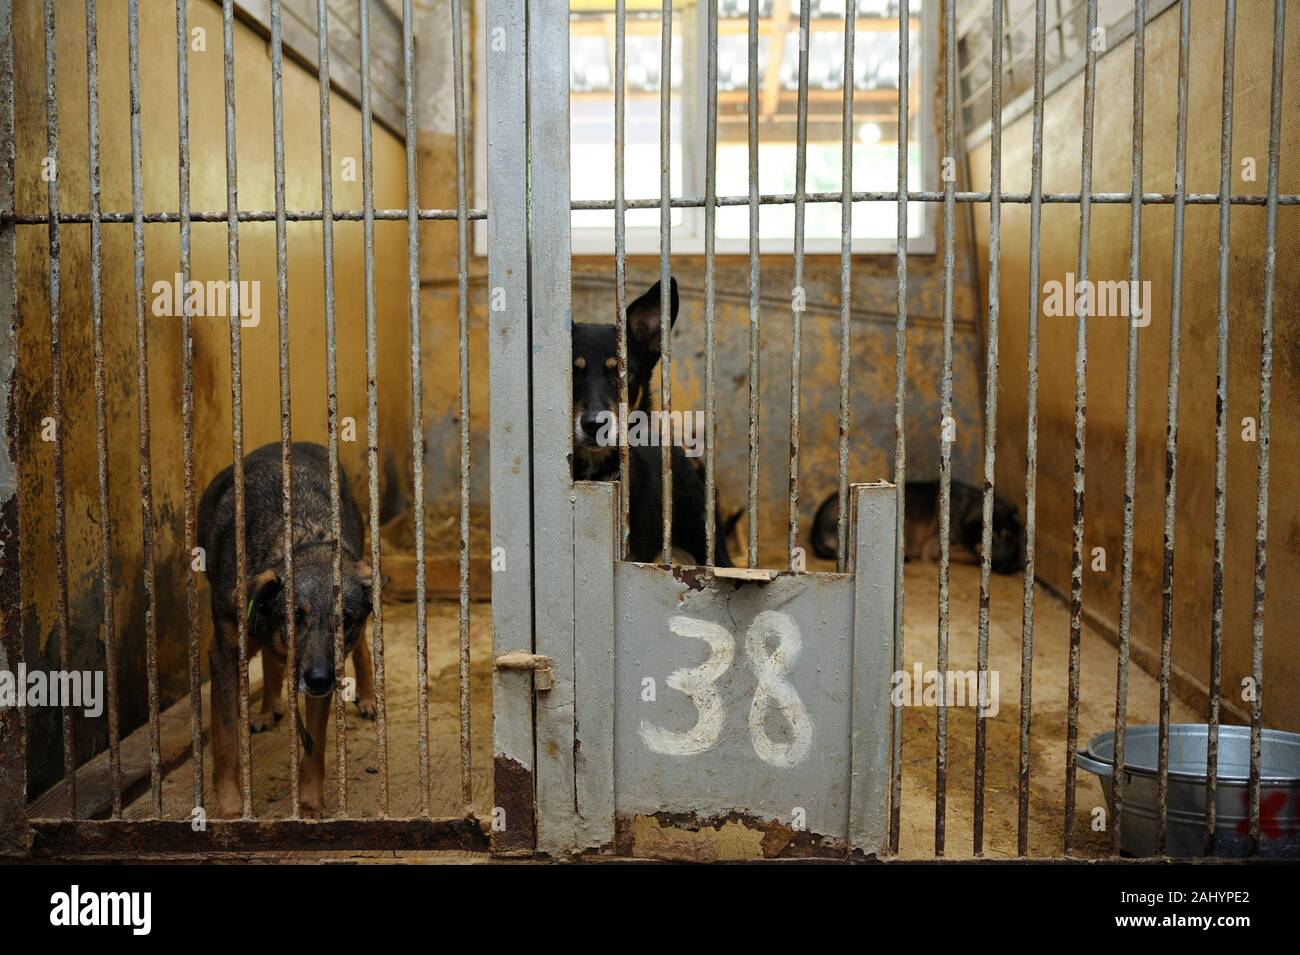 Tierquälerei. Aggressive streunender Hund Knurren, bellen hinter Gittern in der Voliere, Borodyanka, Ukraine Stockfoto